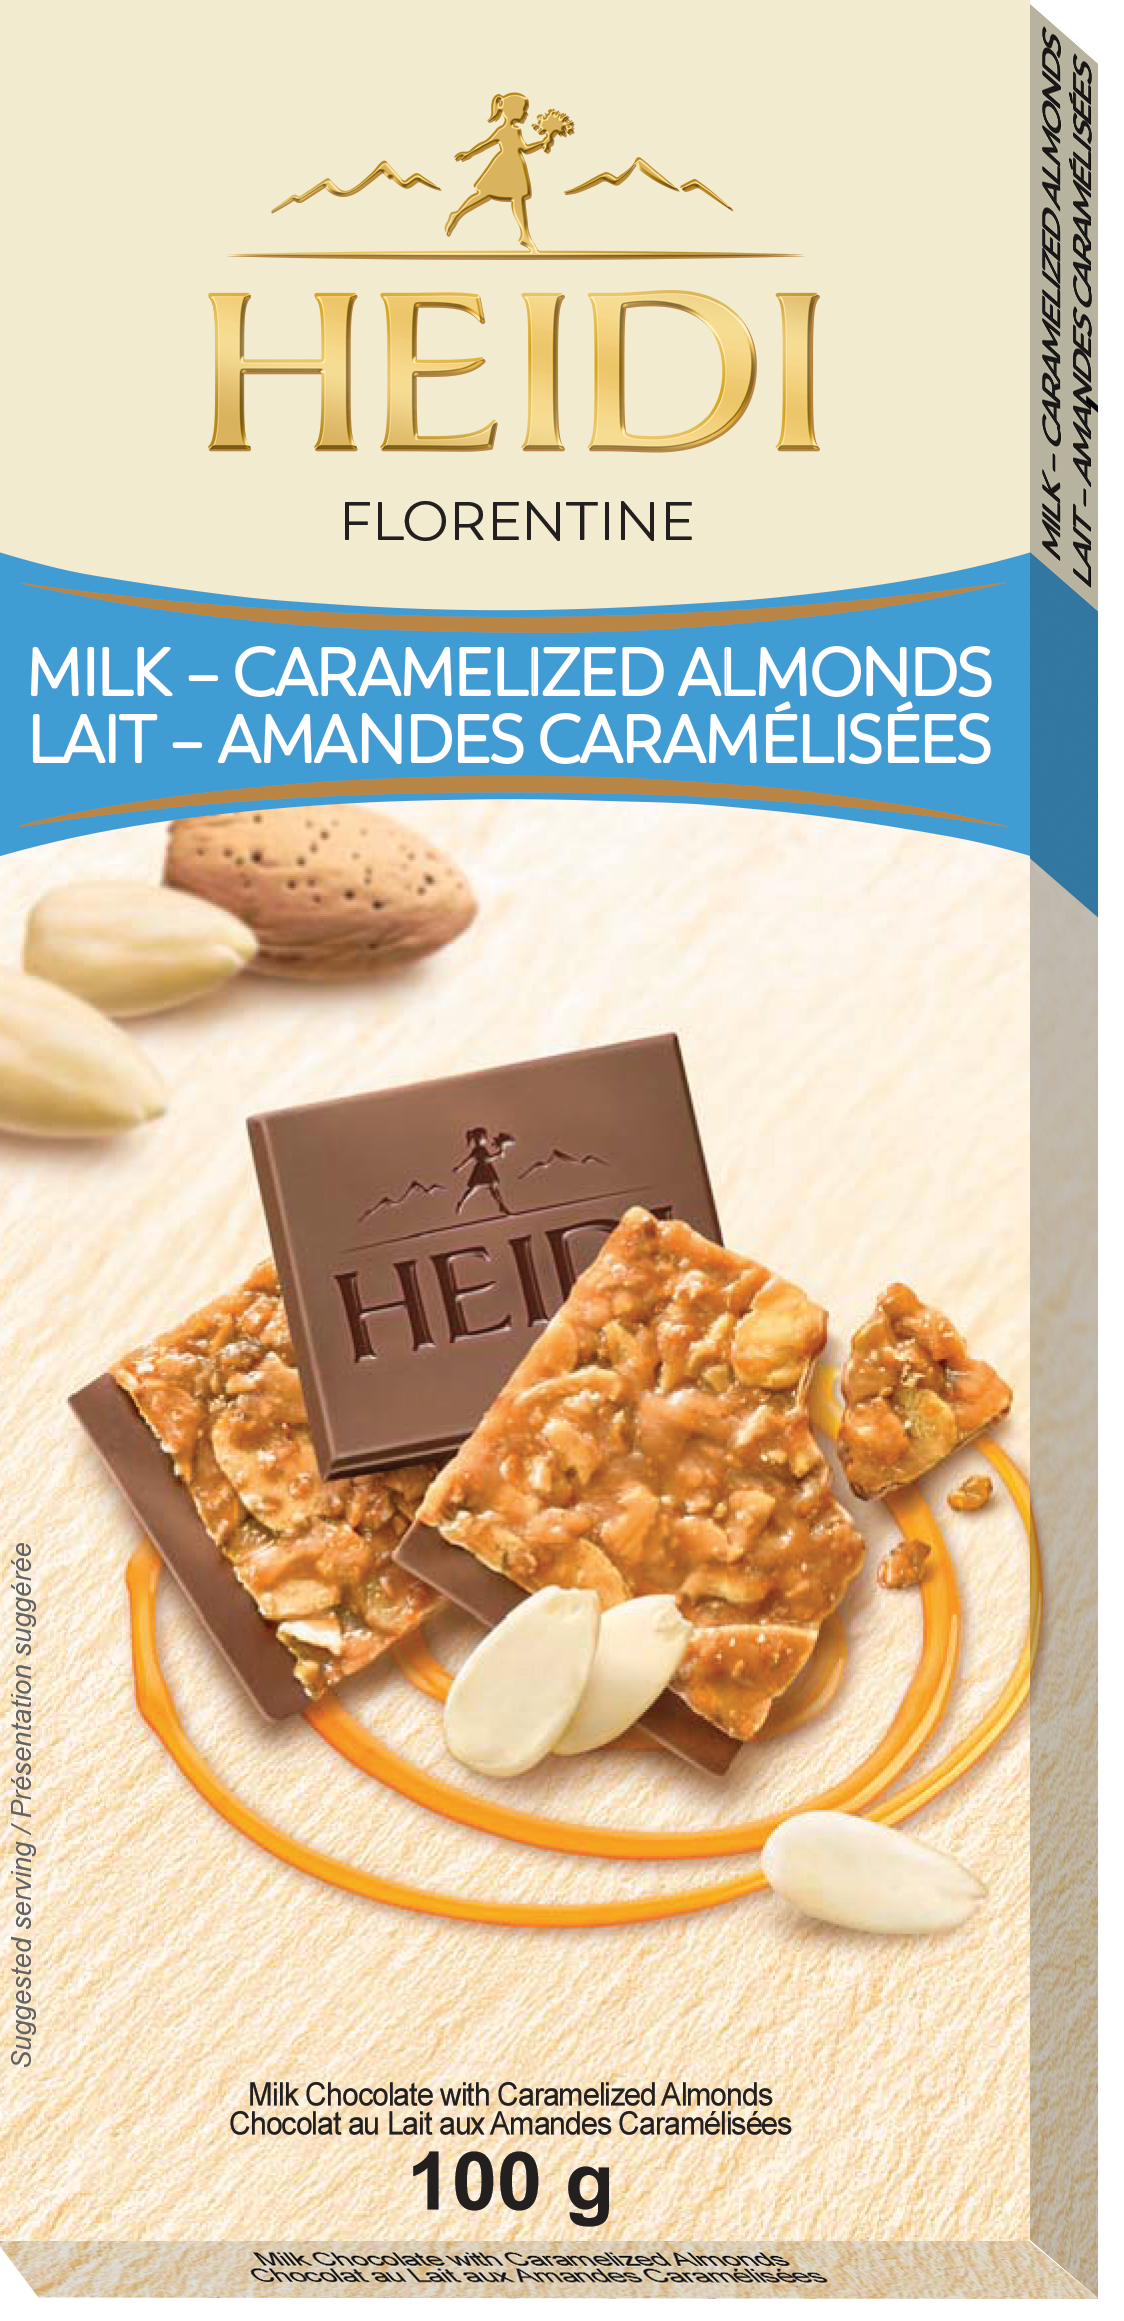 Heidi Dark Chocolate with Caramelized Almonds